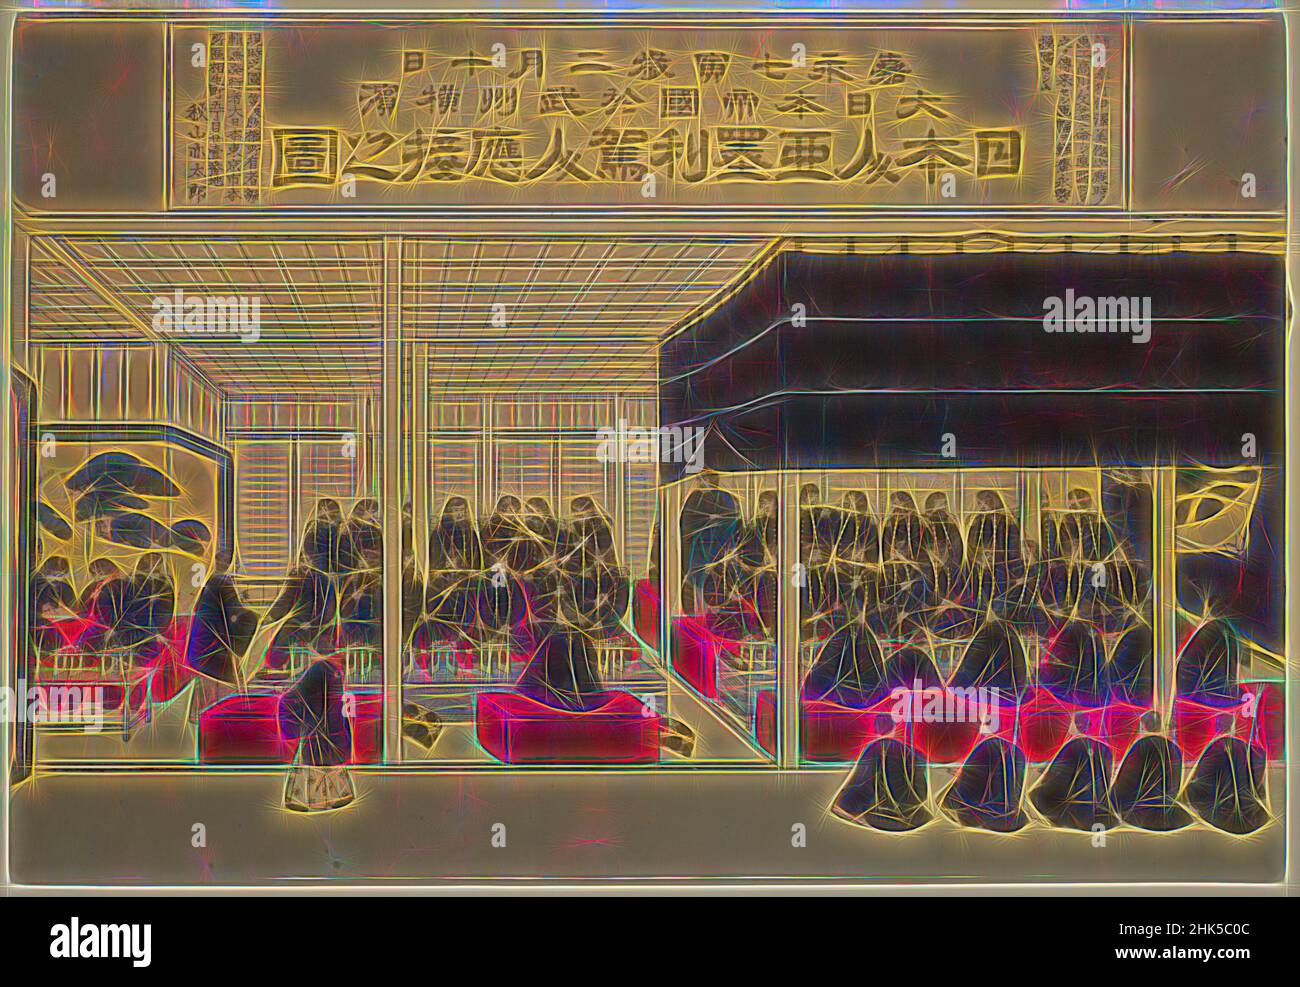 Inspiré par la réception du Commodore Perry par des nobles japonais, impression de blocs de bois couleur, Japon, CA. 1887, période Meiji, 14 x 20 3/8 po., 35,6 x 51,8 cm, réimaginé par Artotop. L'art classique réinventé avec une touche moderne. Conception de lumière chaleureuse et gaie, de luminosité et de rayonnement de lumière. La photographie s'inspire du surréalisme et du futurisme, embrassant l'énergie dynamique de la technologie moderne, du mouvement, de la vitesse et révolutionne la culture Banque D'Images